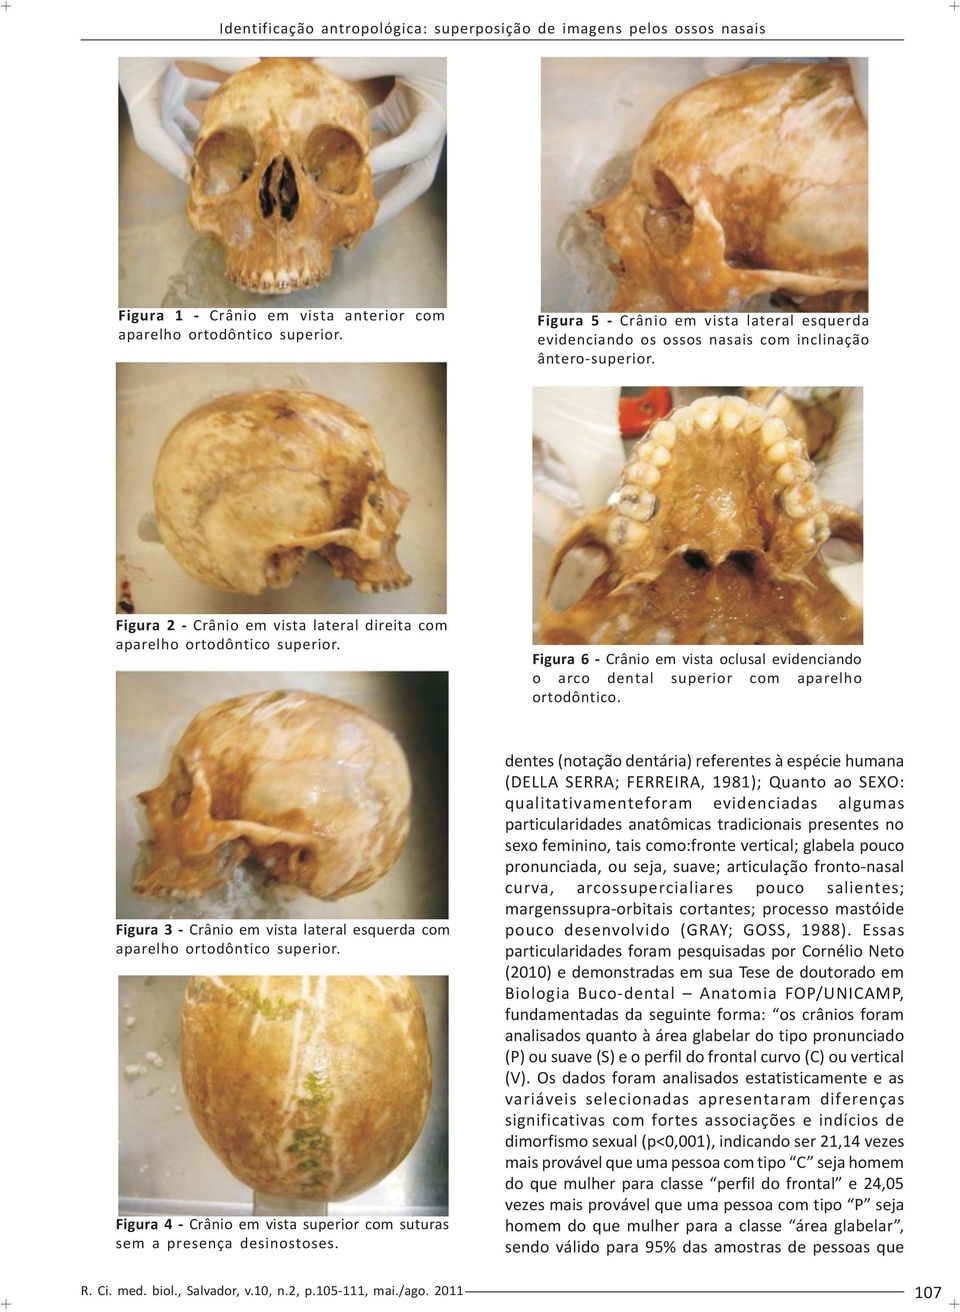 Figura 3 - Crânio em vista lateral esquerda com aparelho ortodôntico superior. Figura 4 - Crânio em vista superior com suturas sem a presença desinostoses.